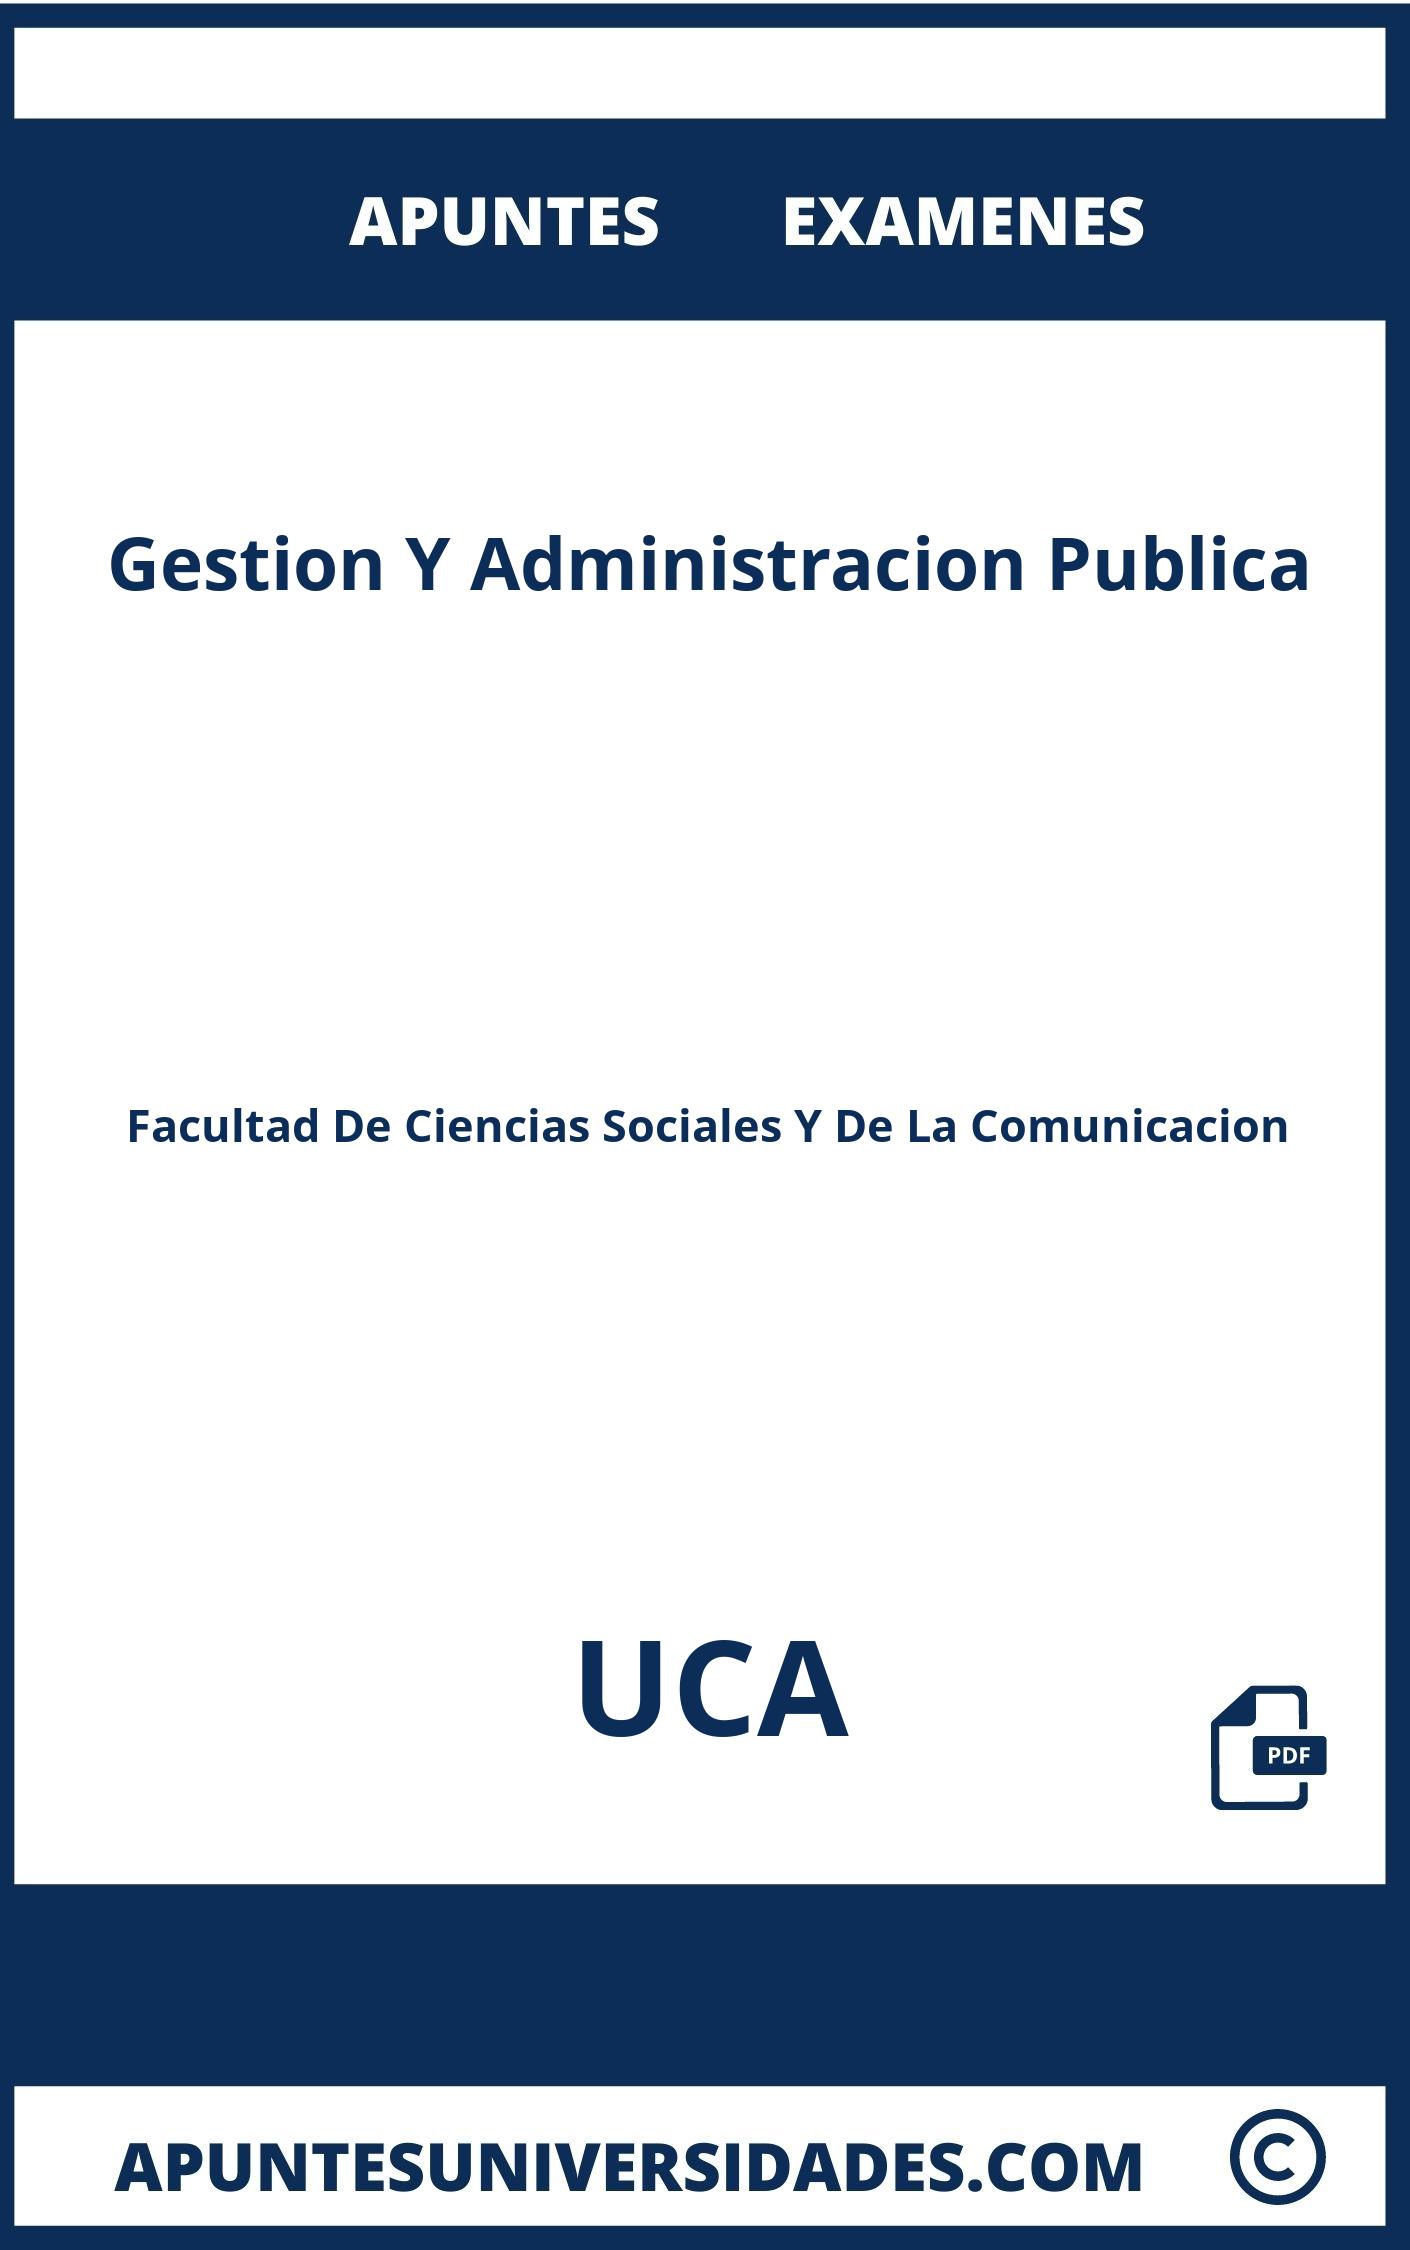 Apuntes Examenes Gestion Y Administracion Publica UCA